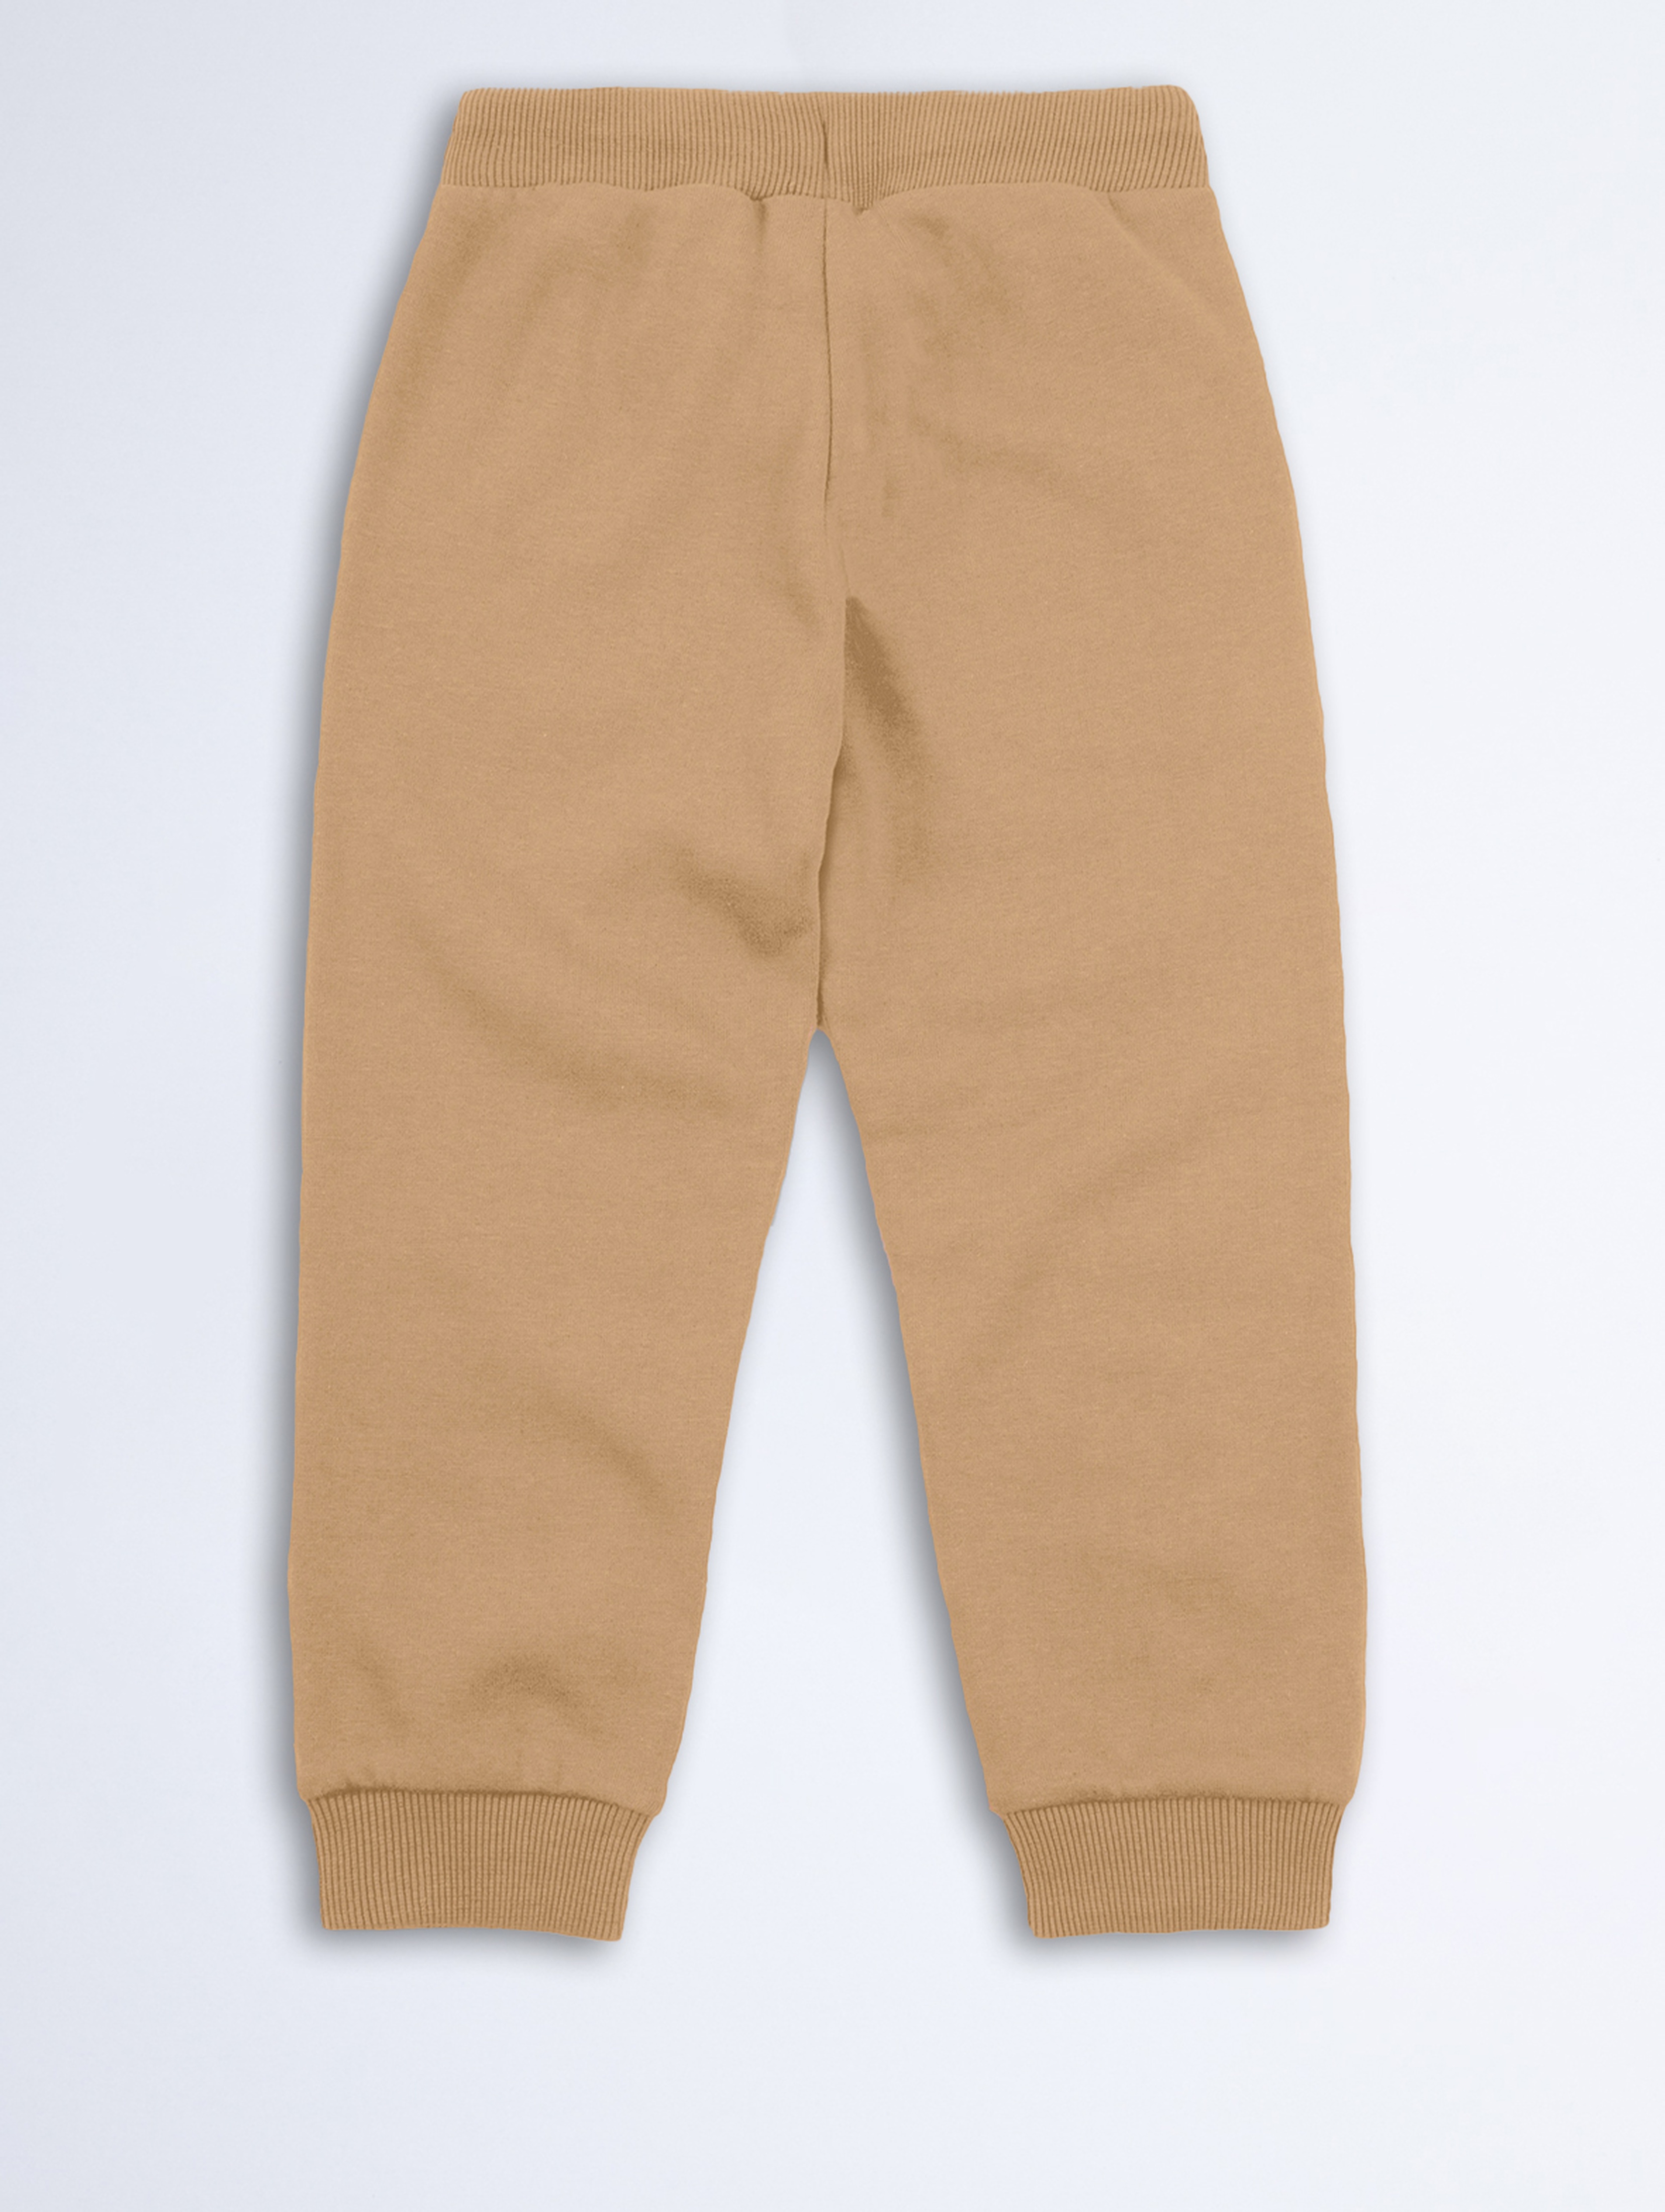 Beżowe spodnie dresowe dla dziecka - unisex - Limited Edition